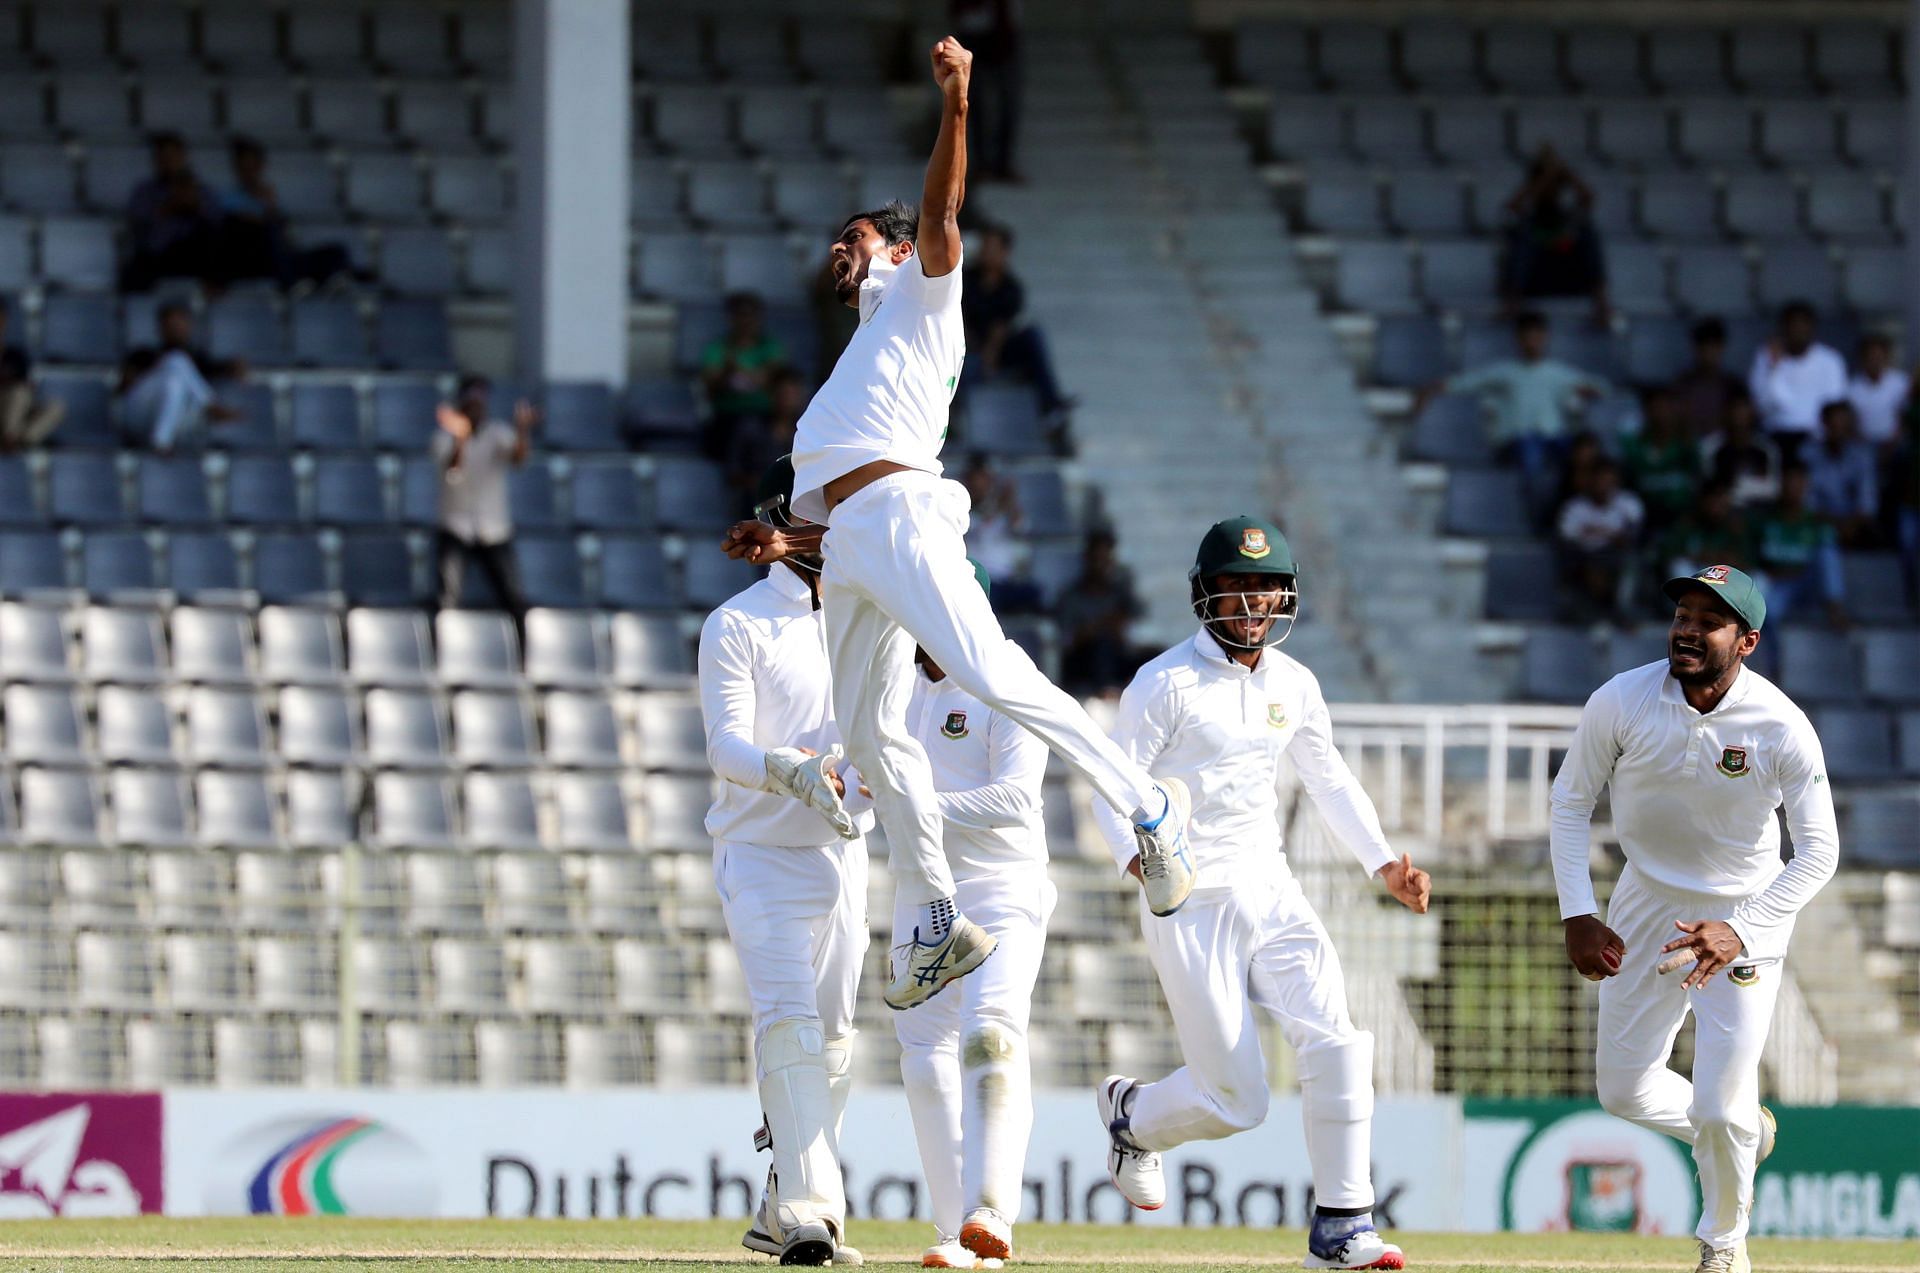 Taijul Islam in action. (Photo Credits: Bangladesh cricket)